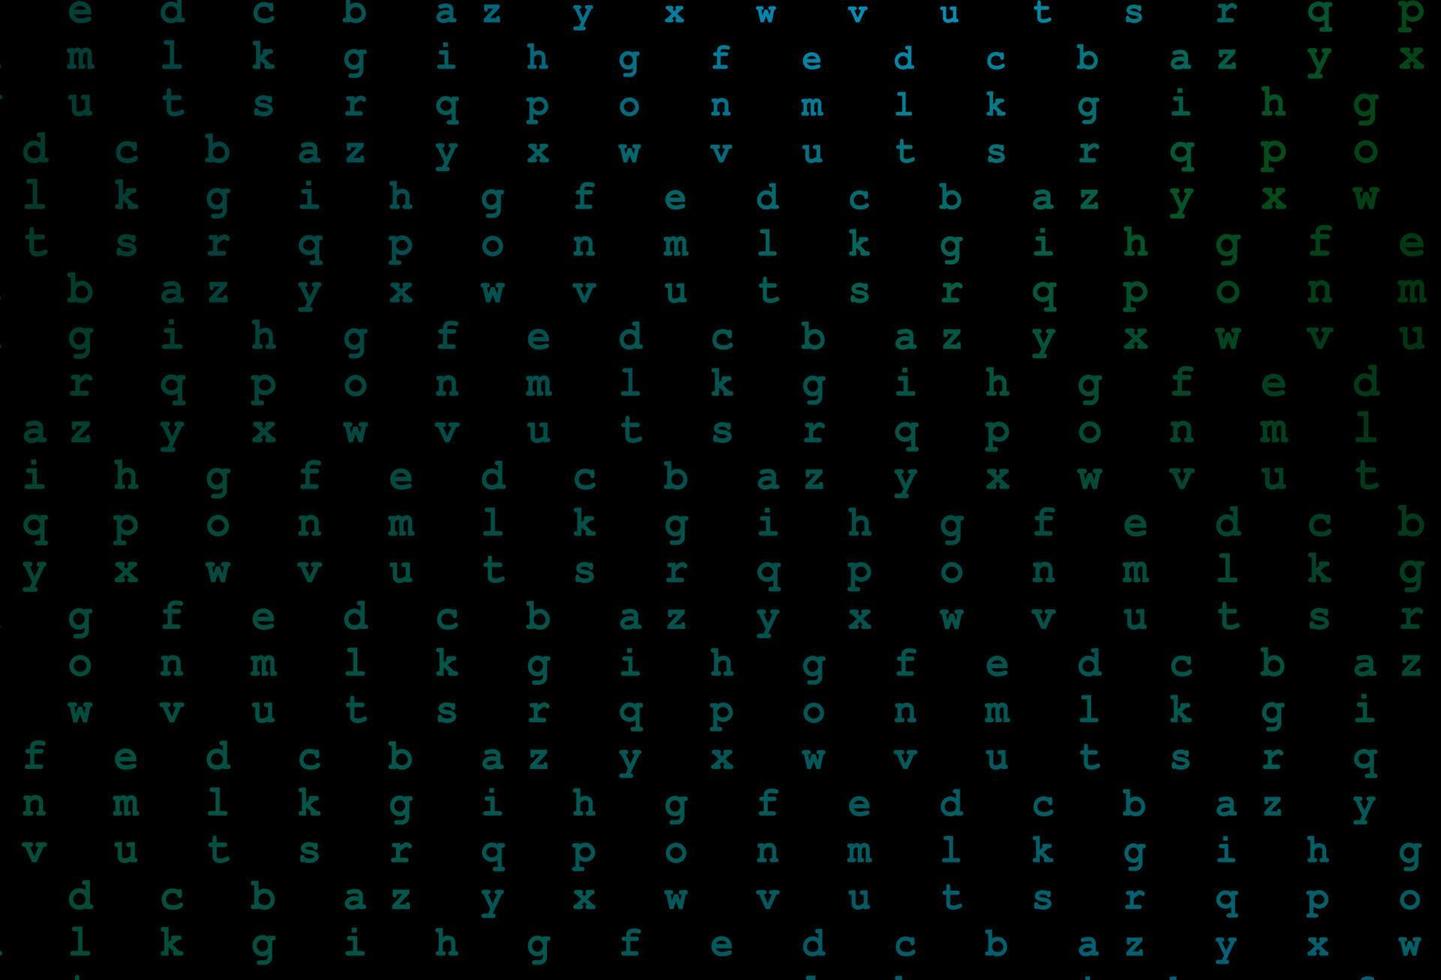 mörkblå, grön vektor layout med latinska alfabetet.